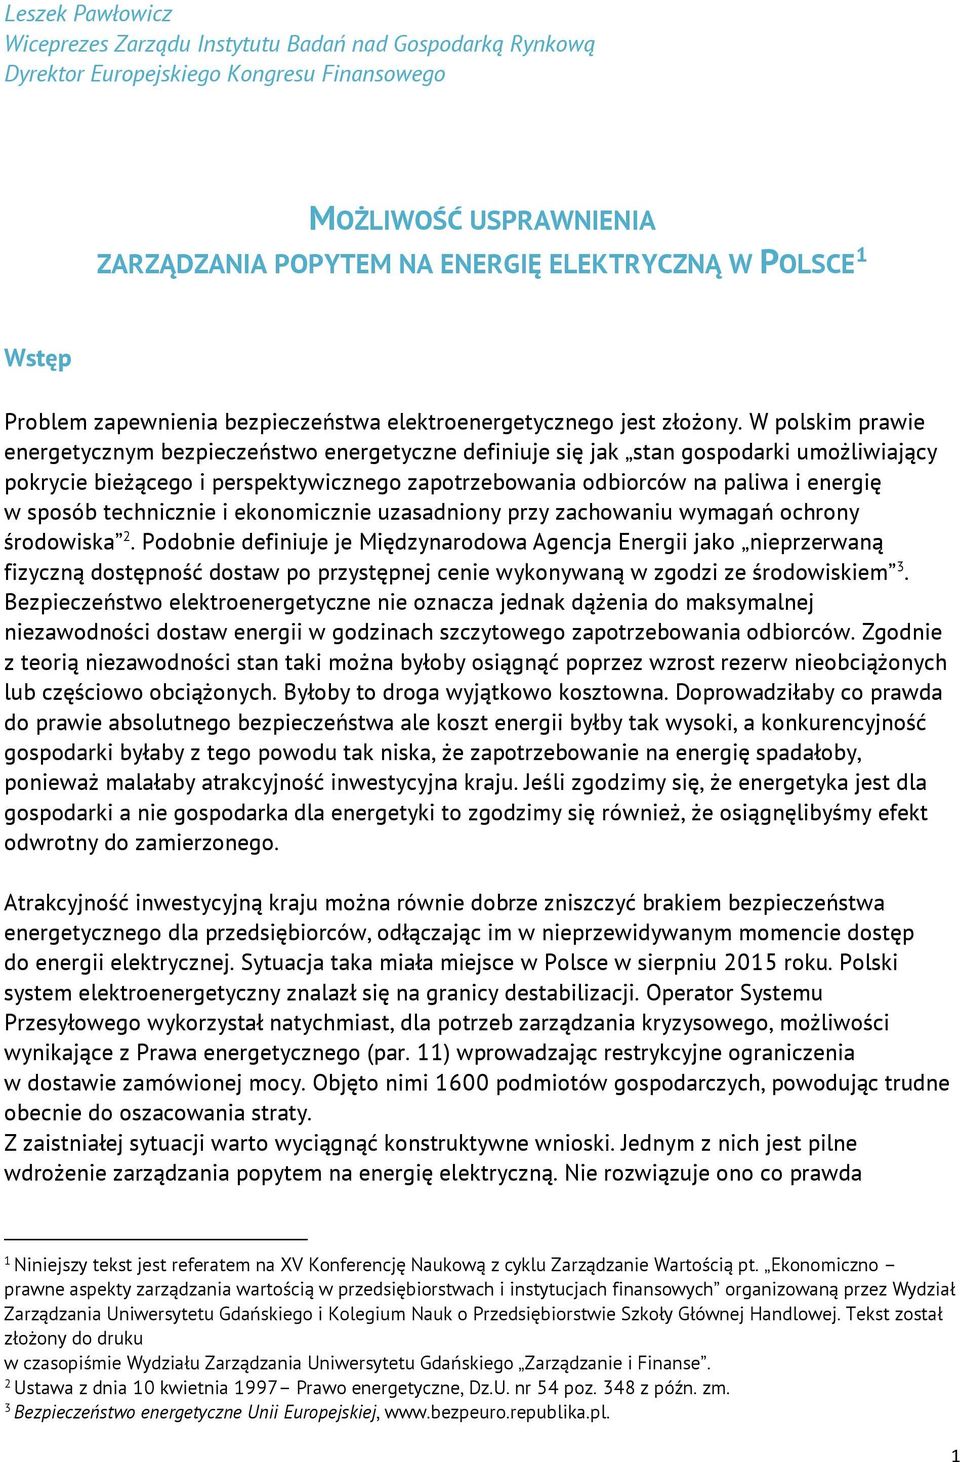 W polskim prawie energetycznym bezpieczeństwo energetyczne definiuje się jak stan gospodarki umożliwiający pokrycie bieżącego i perspektywicznego zapotrzebowania odbiorców na paliwa i energię w